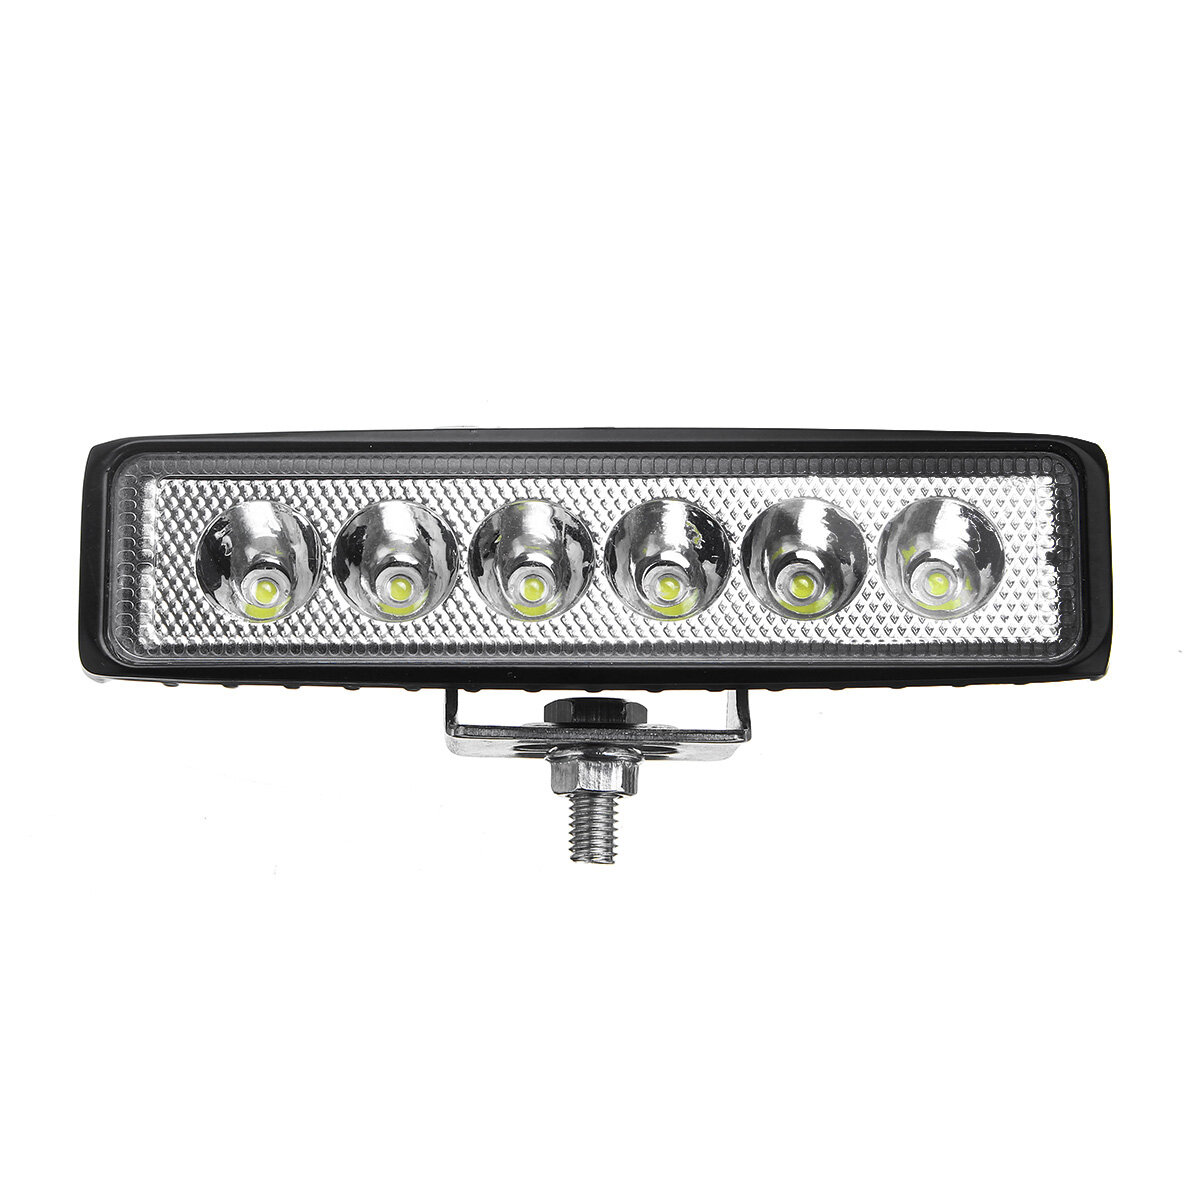 

18W Авто LED Точечный светильник рабочего освещения Противотуманные фары Лампа 6000K Белый IP65 Водонепроницаемы Для вне